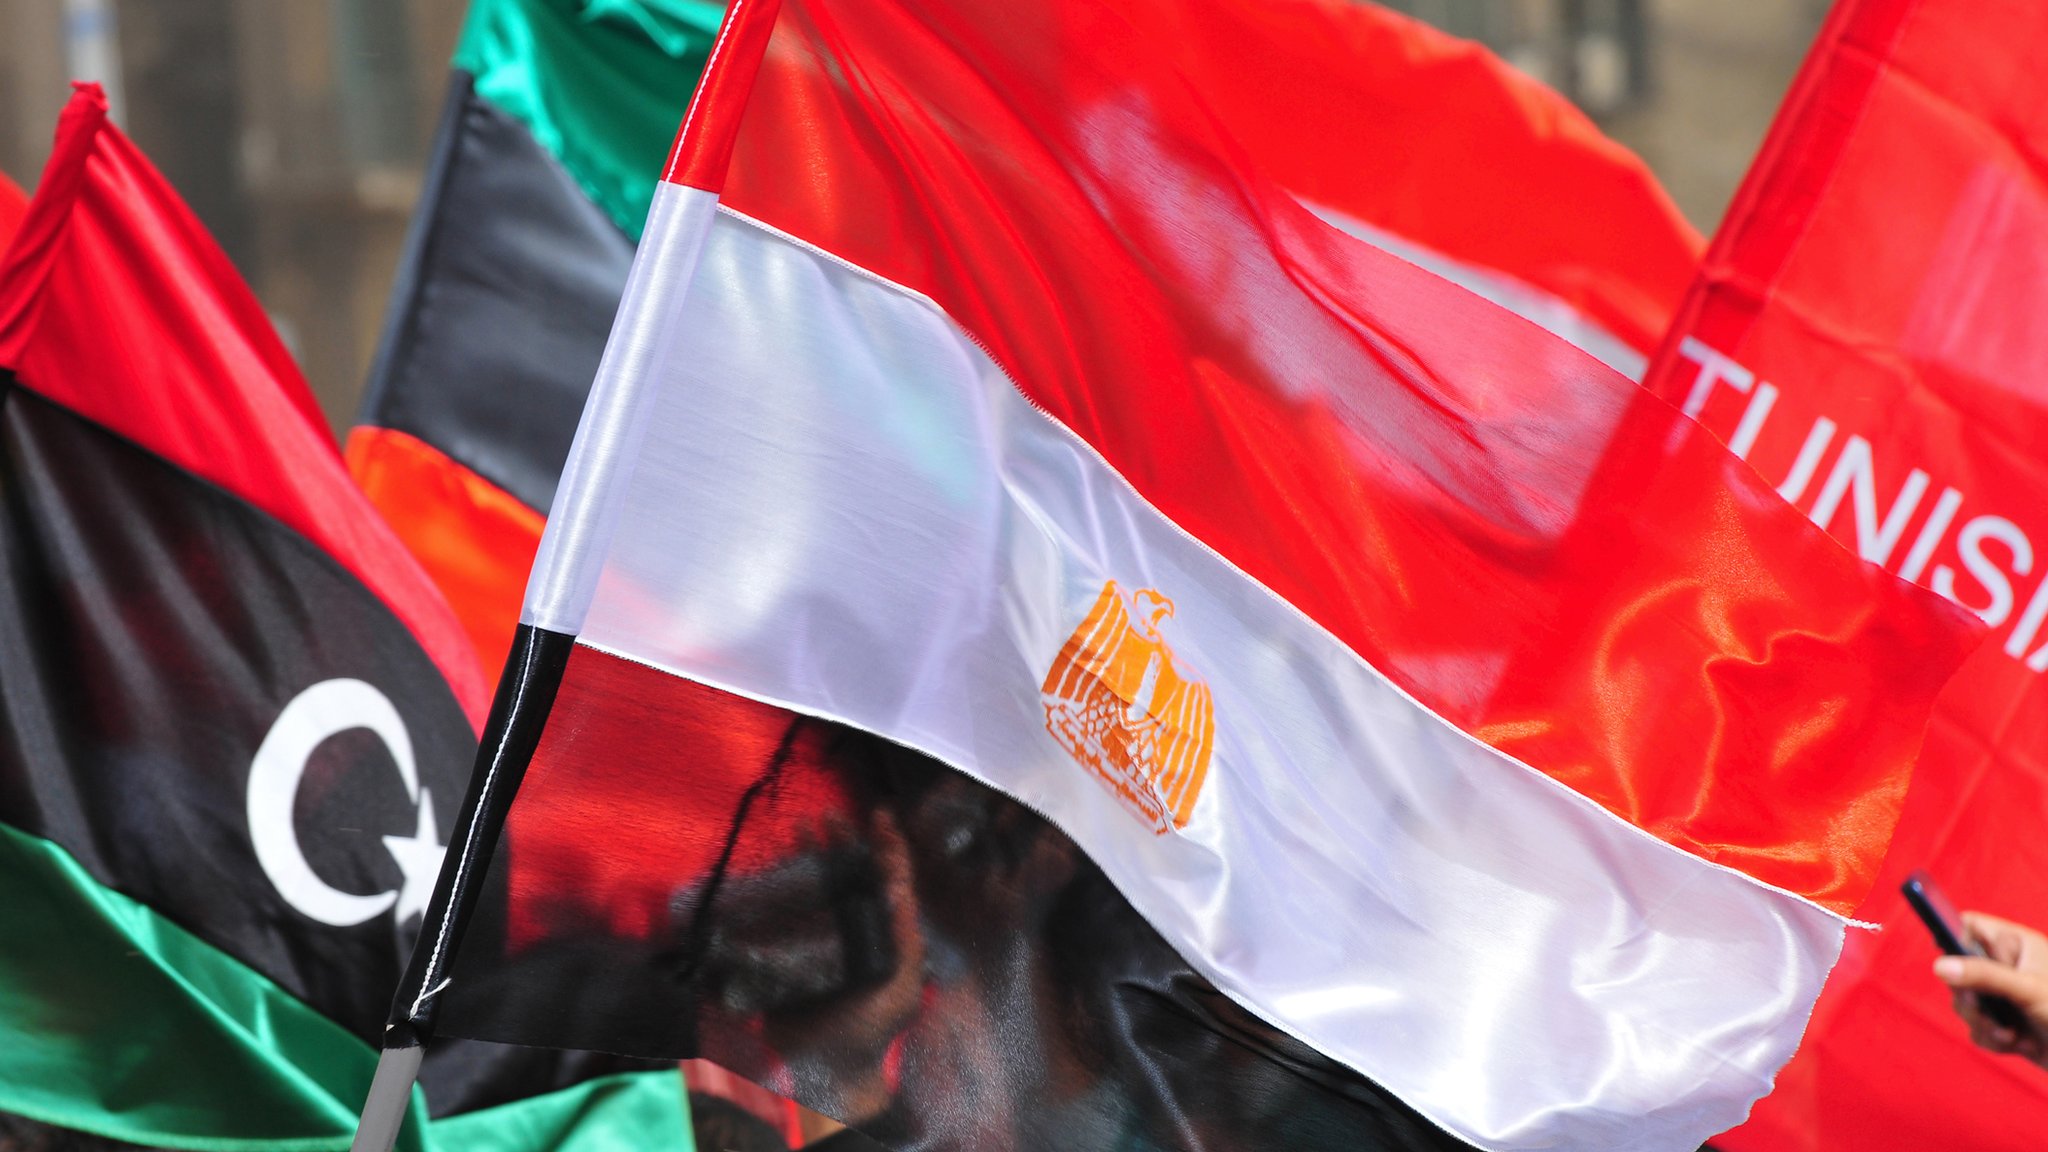 Bandeiras da Primavera Árabe - Infográficos - Estadão